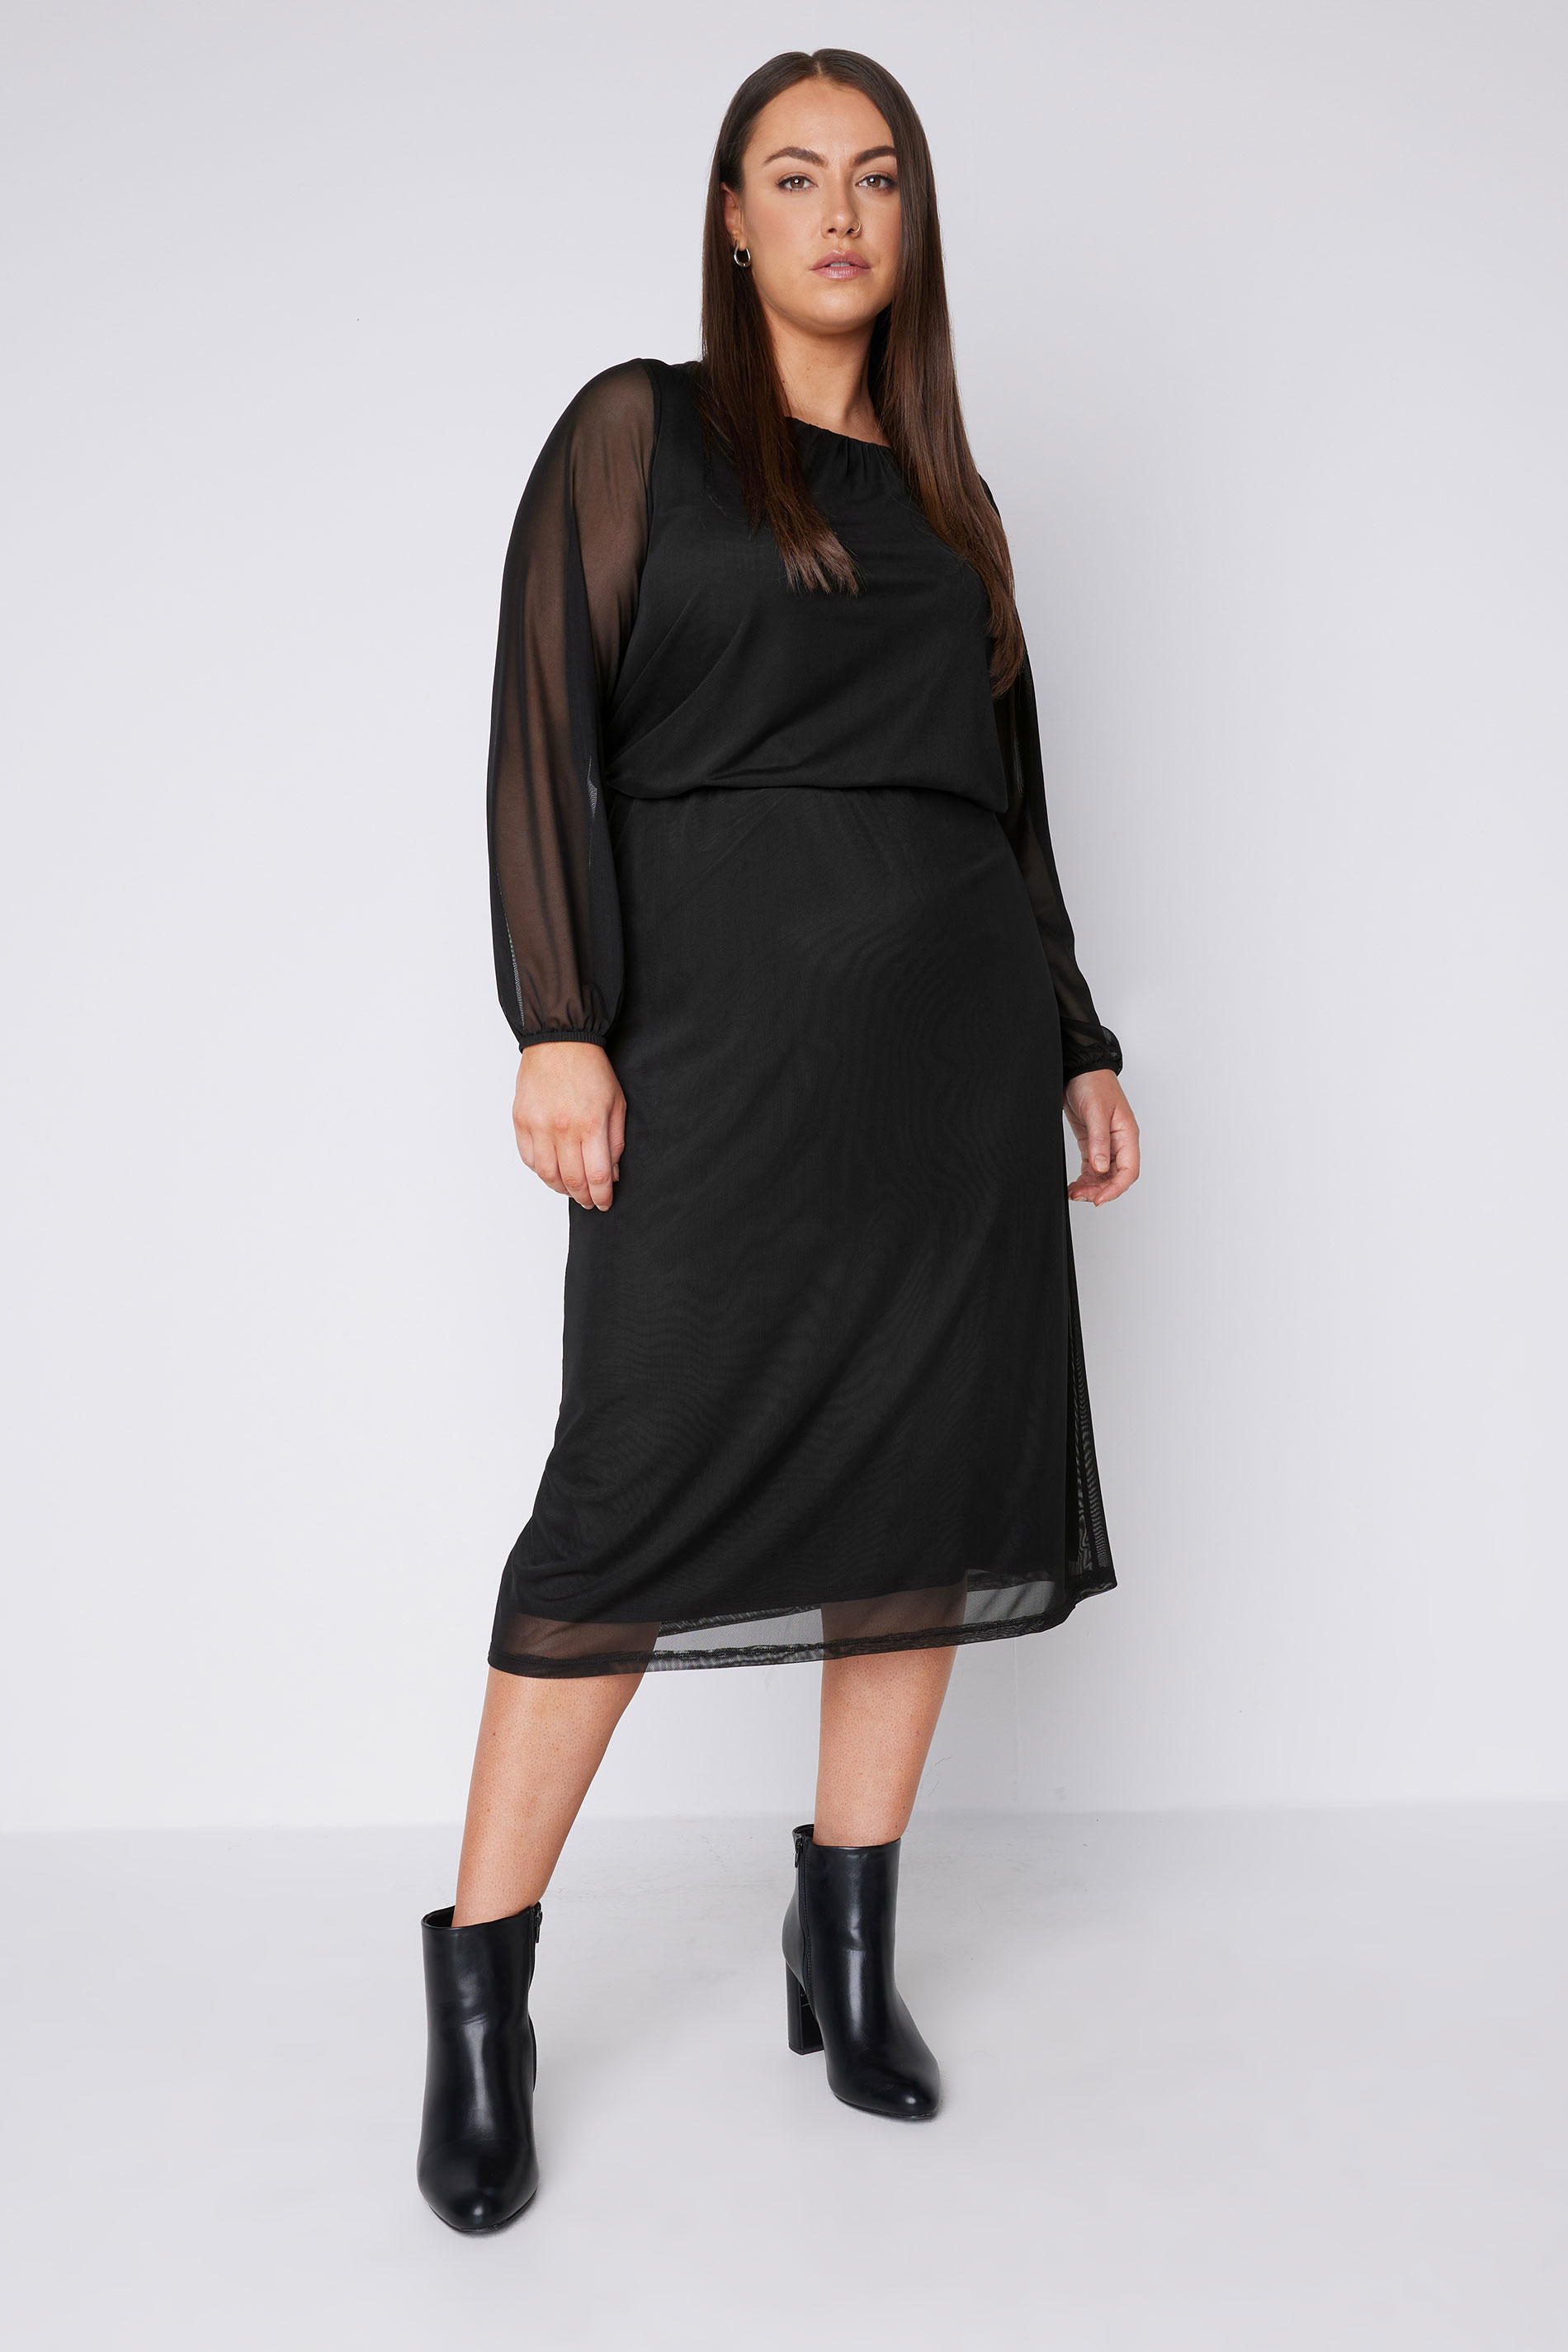 EVANS Plus Size Black Mesh Skirt | Evans 2